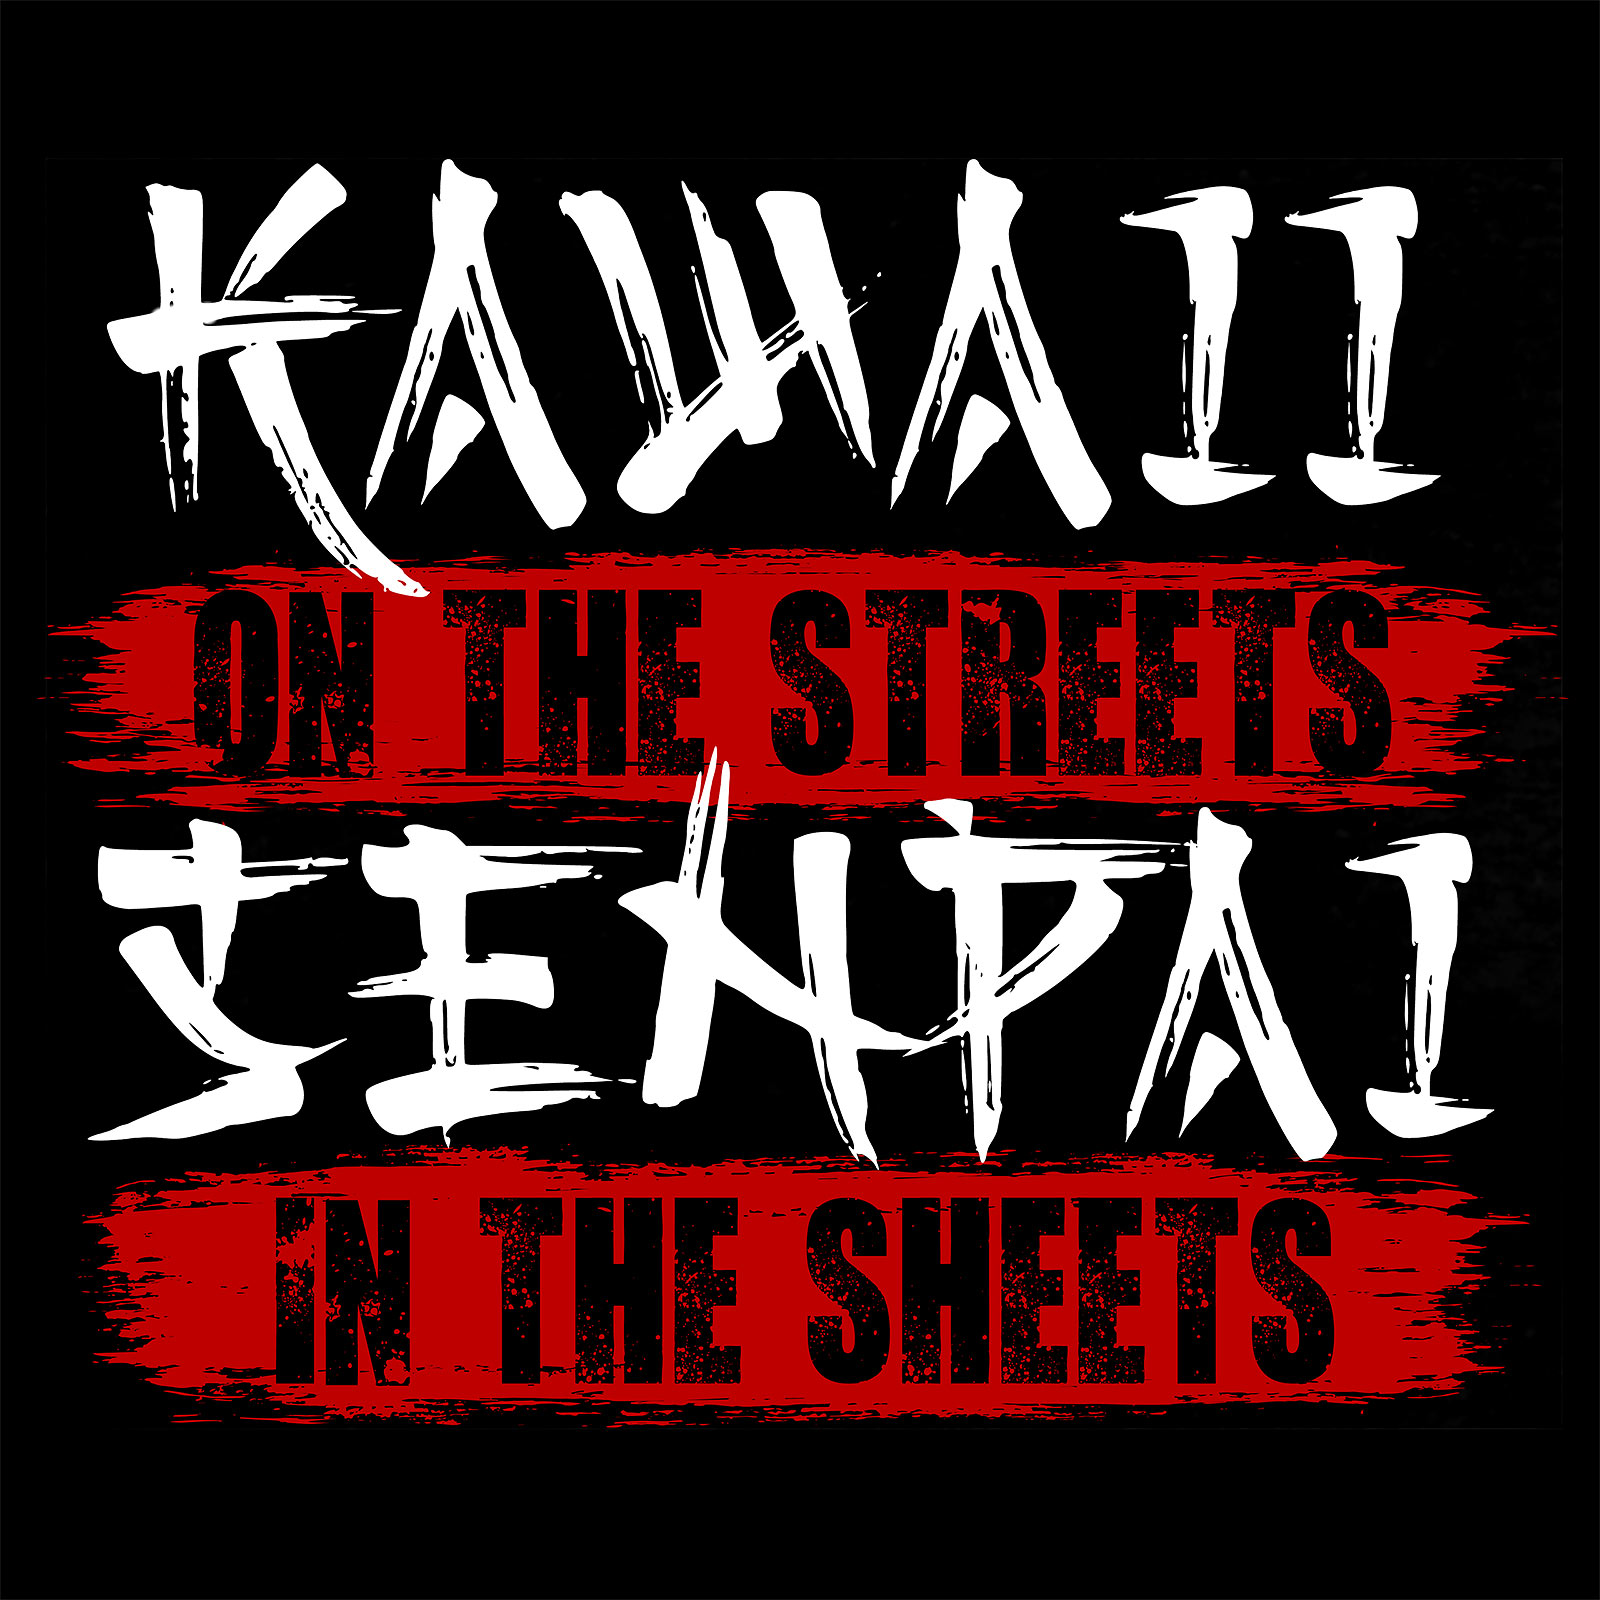 Kawaii & Senpai T-shirt voor Anime Fans Zwart